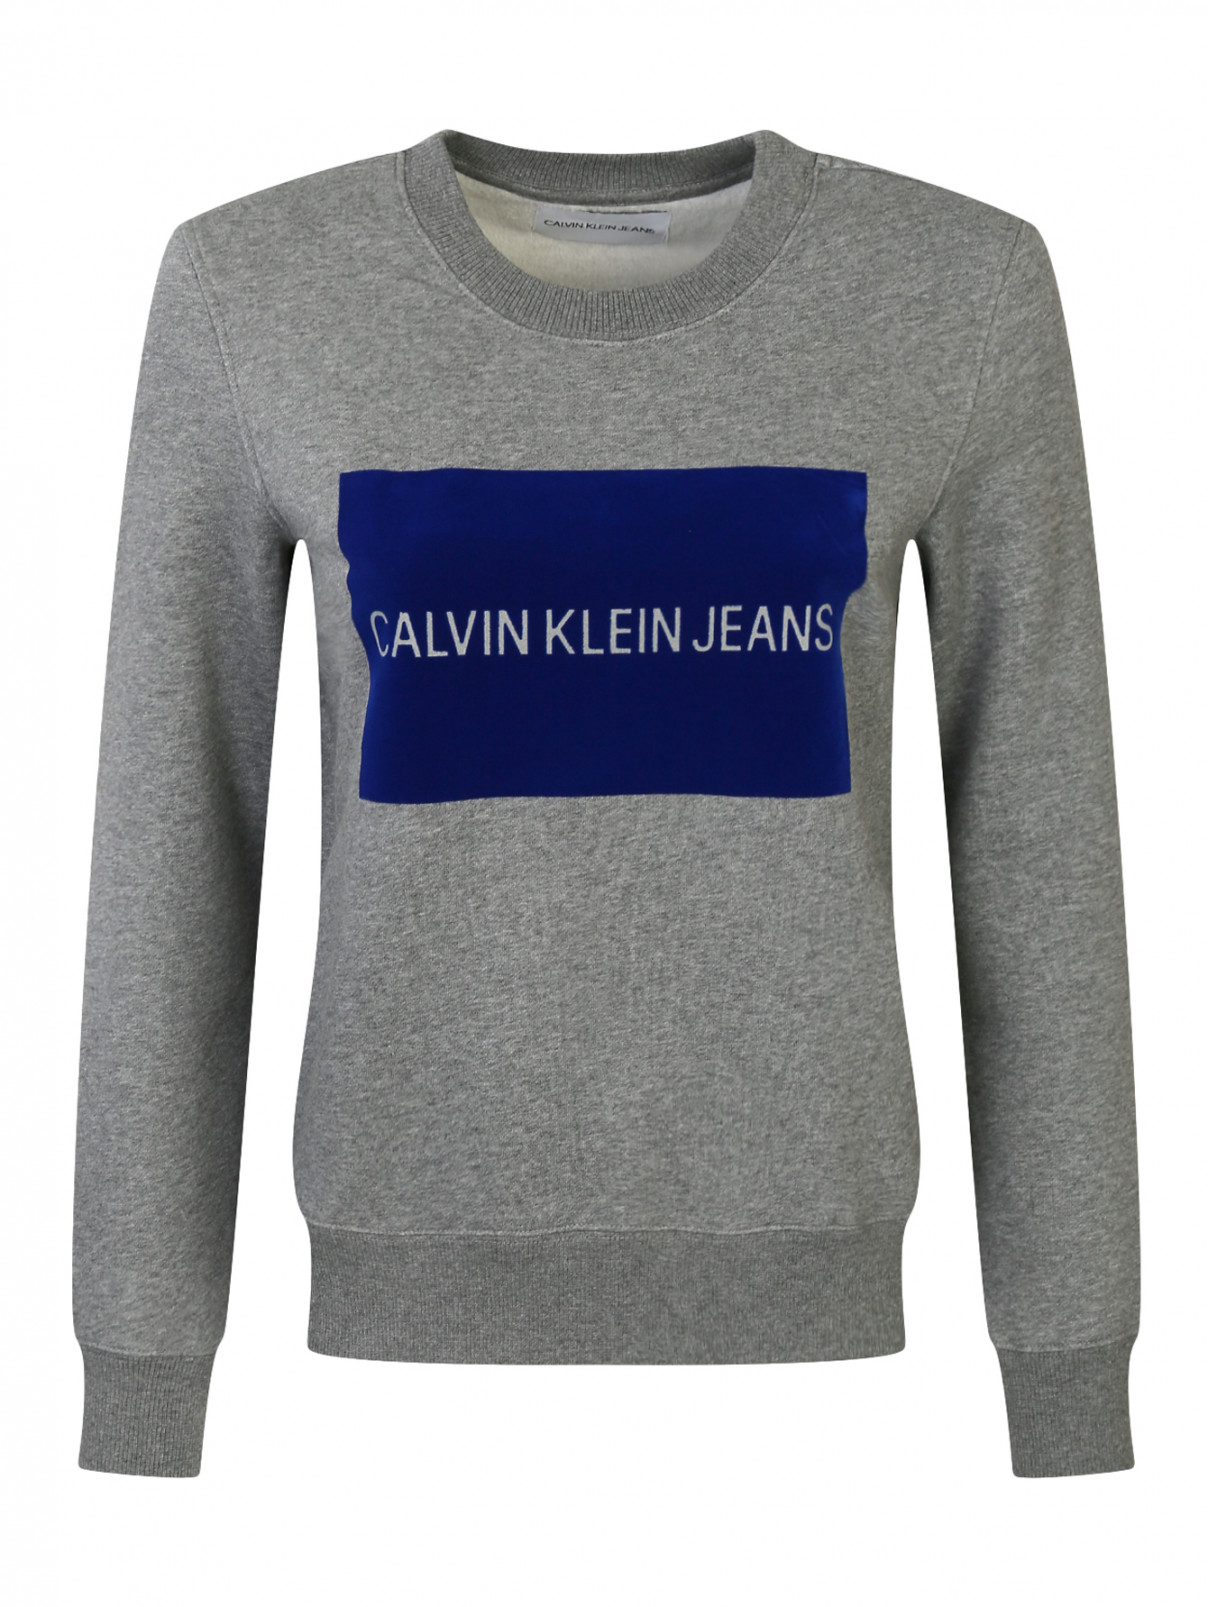 Свитшот из хлопка с принтом Calvin Klein  –  Общий вид  – Цвет:  Серый